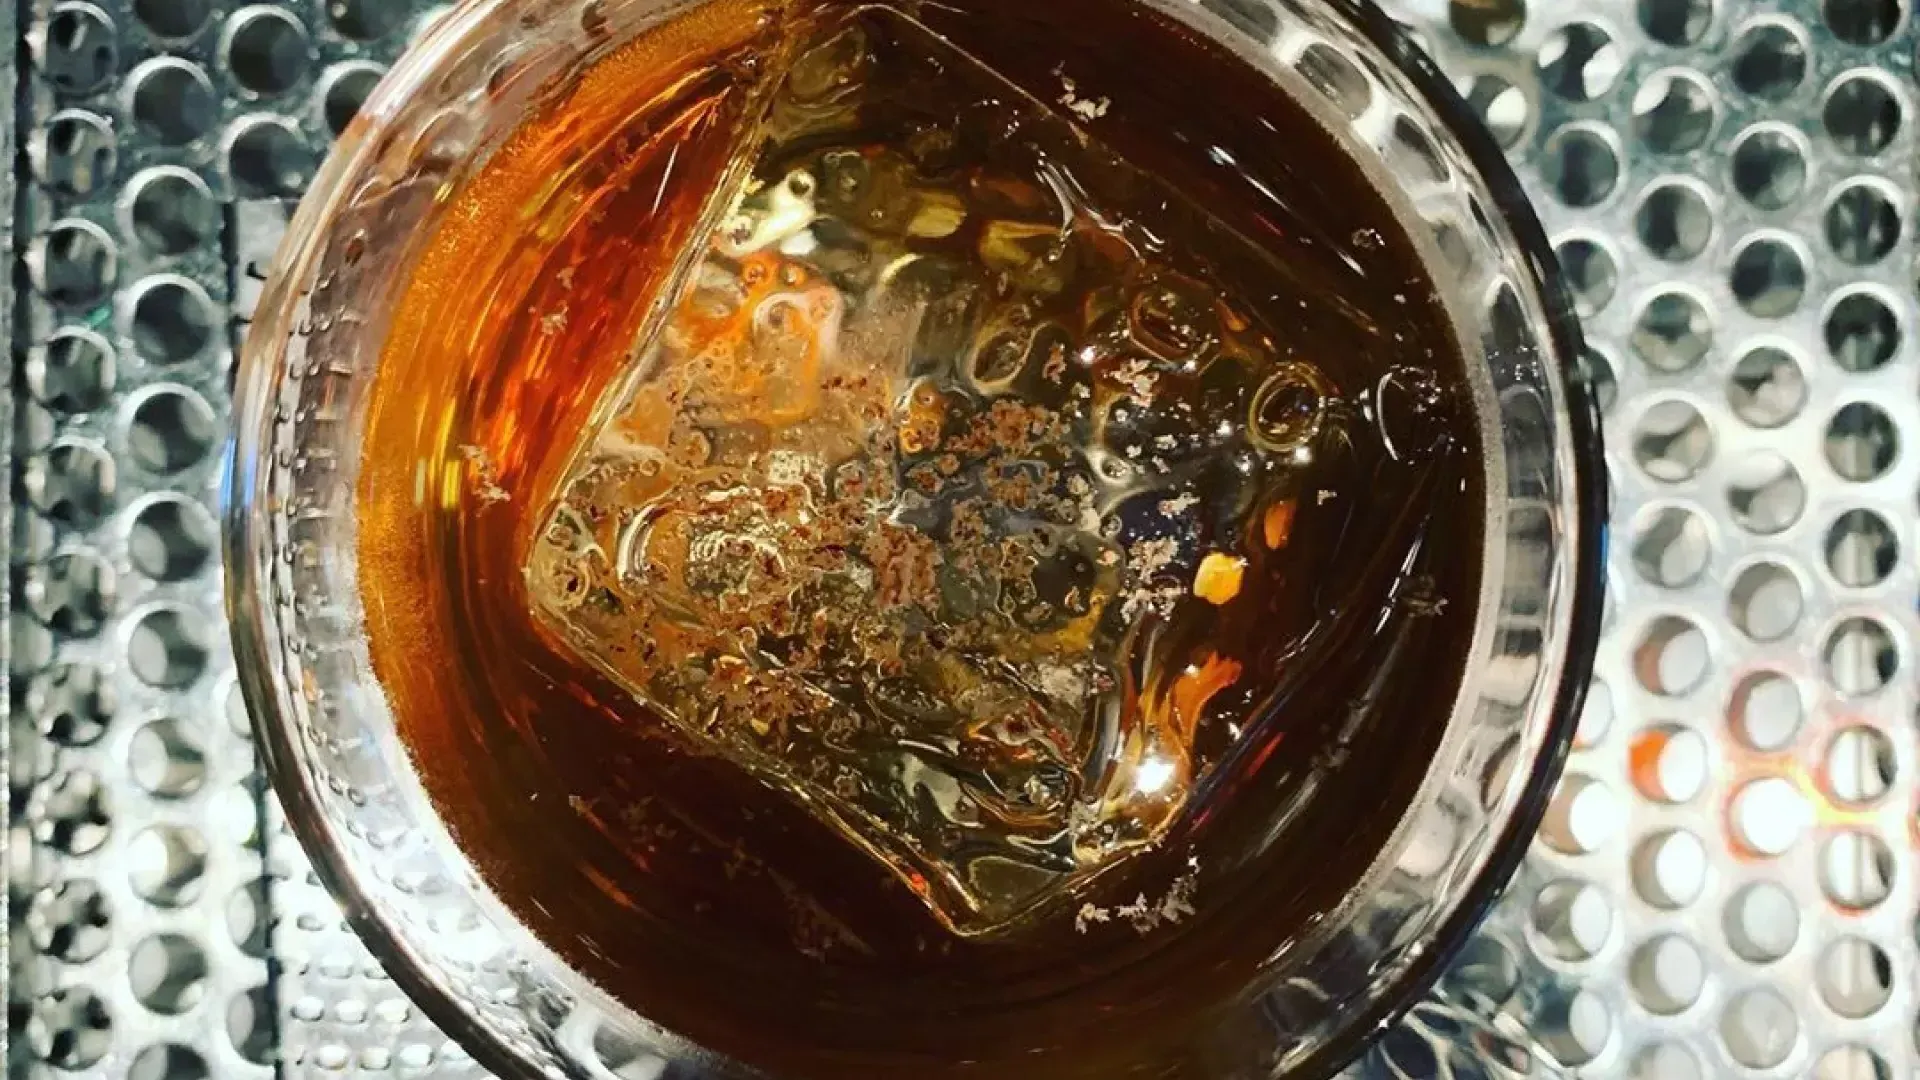 贝博体彩app第三铁路酒吧提供威士忌鸡尾酒.